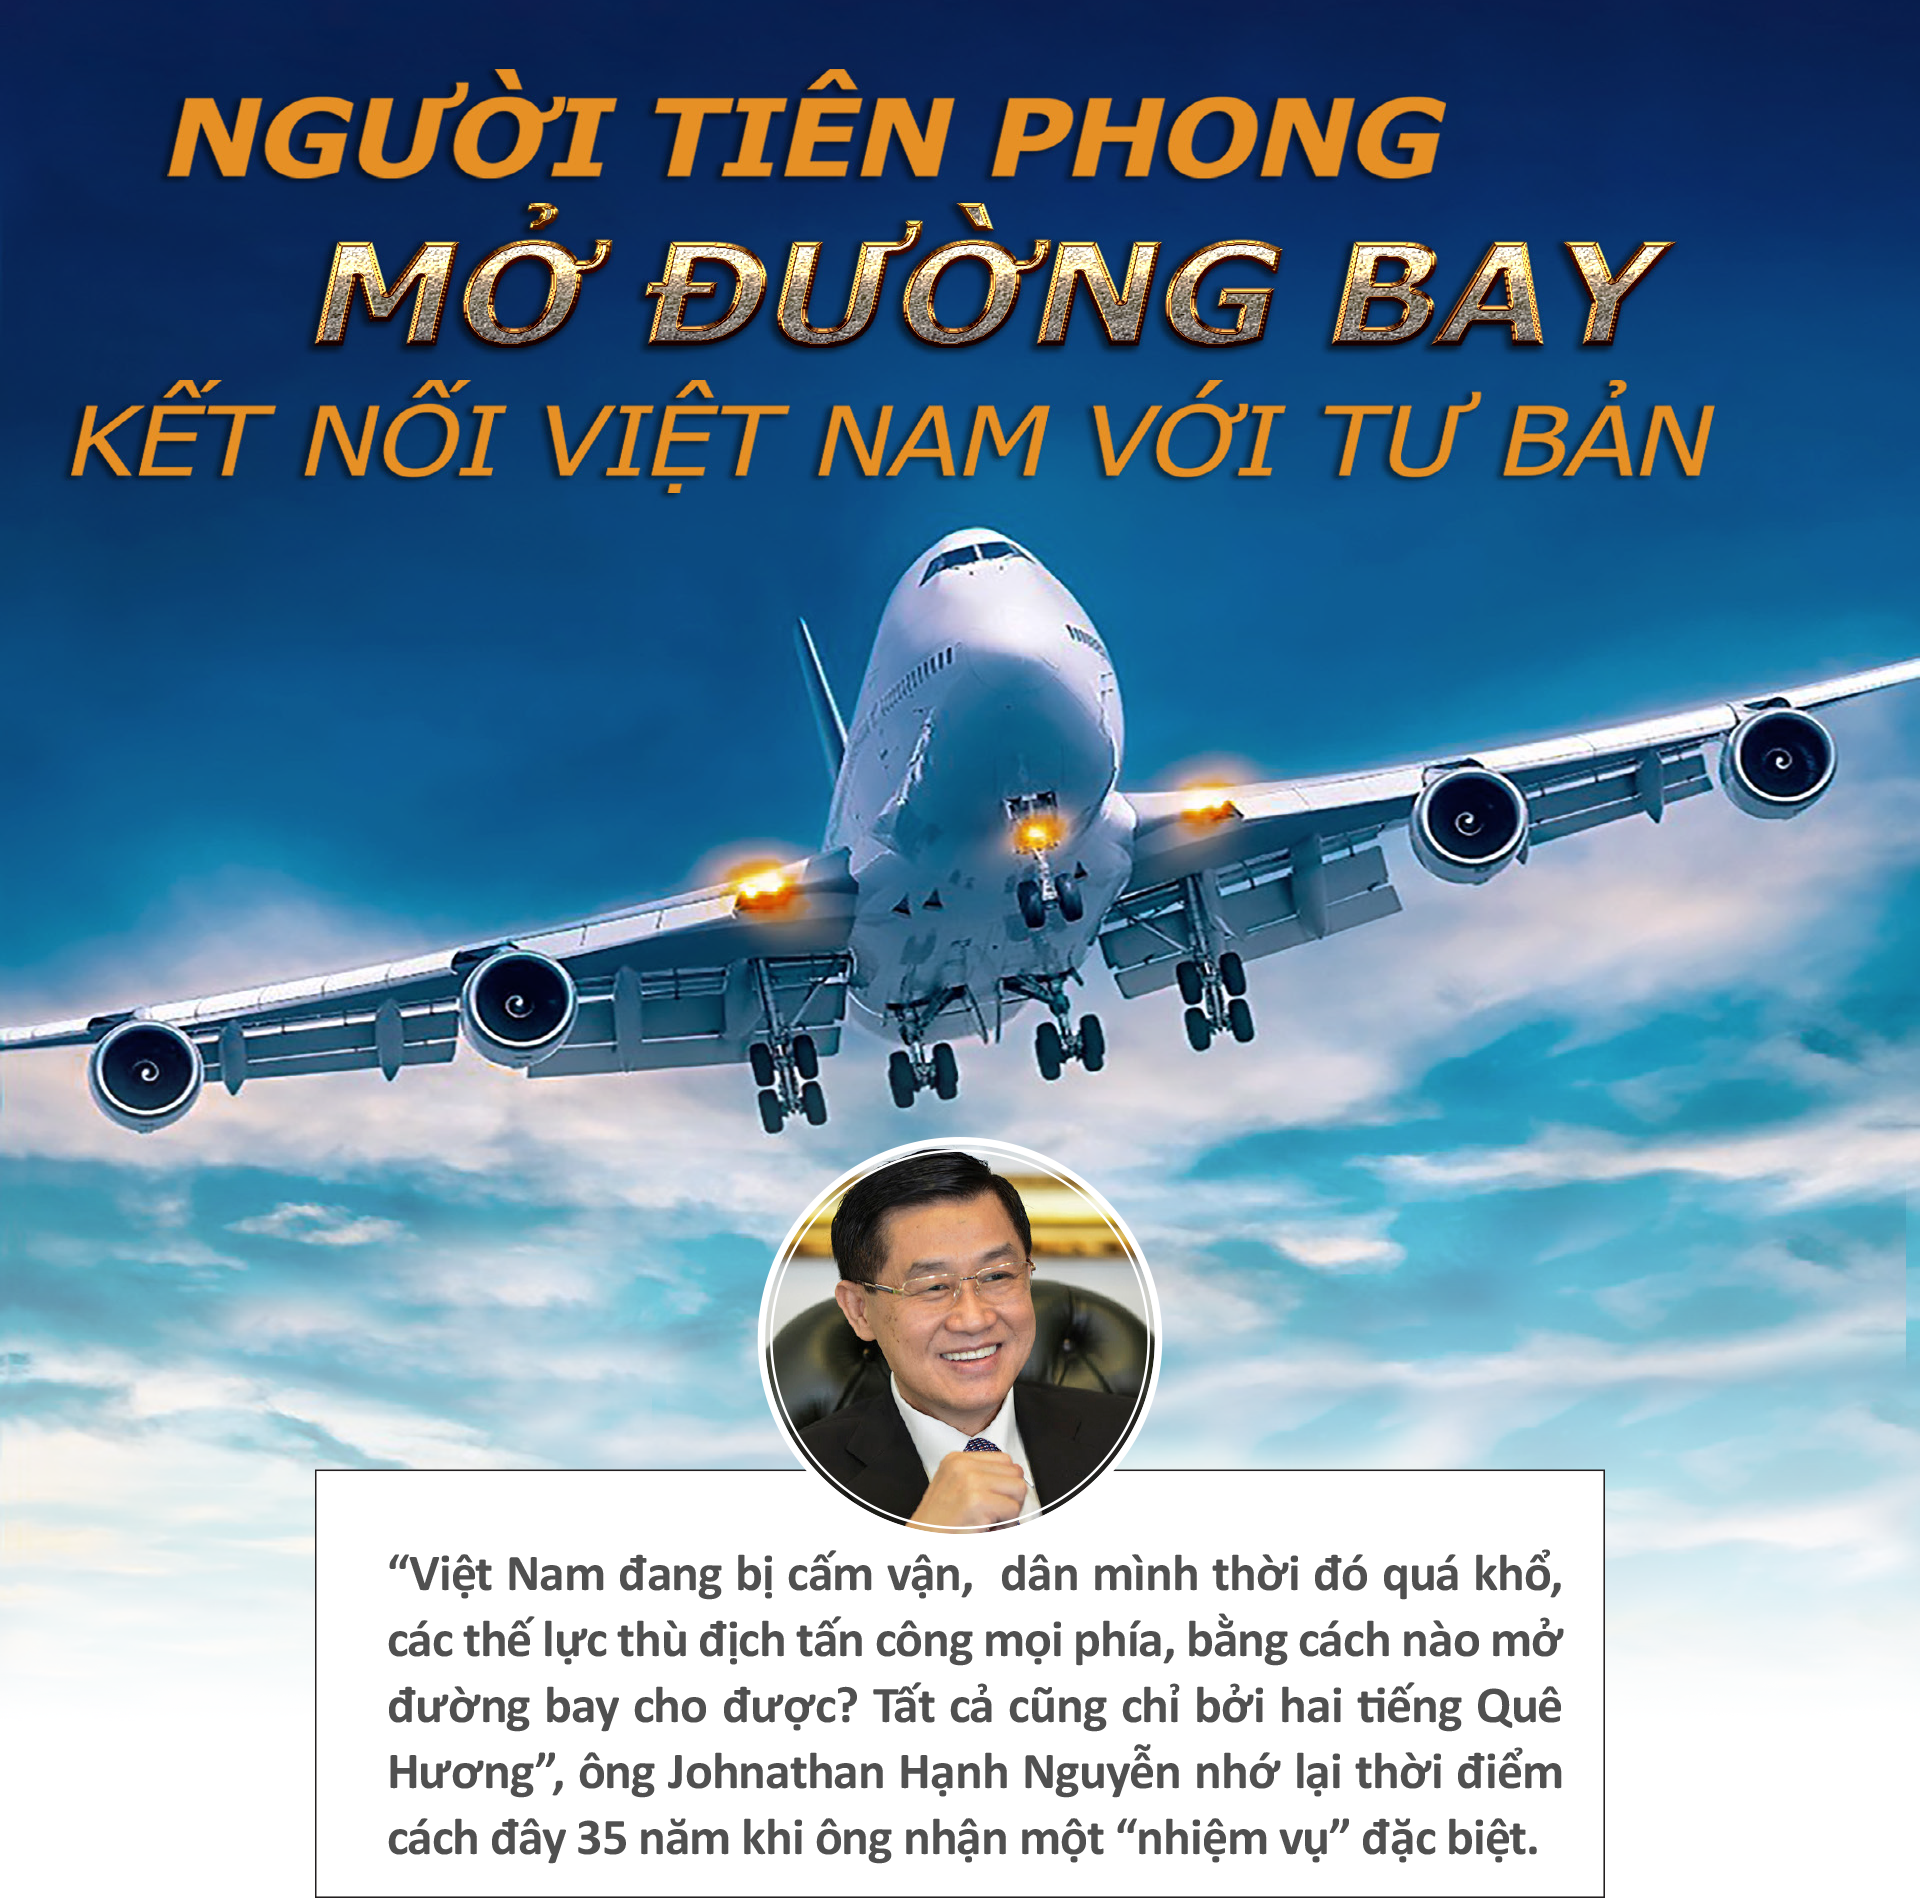 'Vua hàng hiệu" Hạnh Nguyễn kể chuyện mở đường bay có một không hai